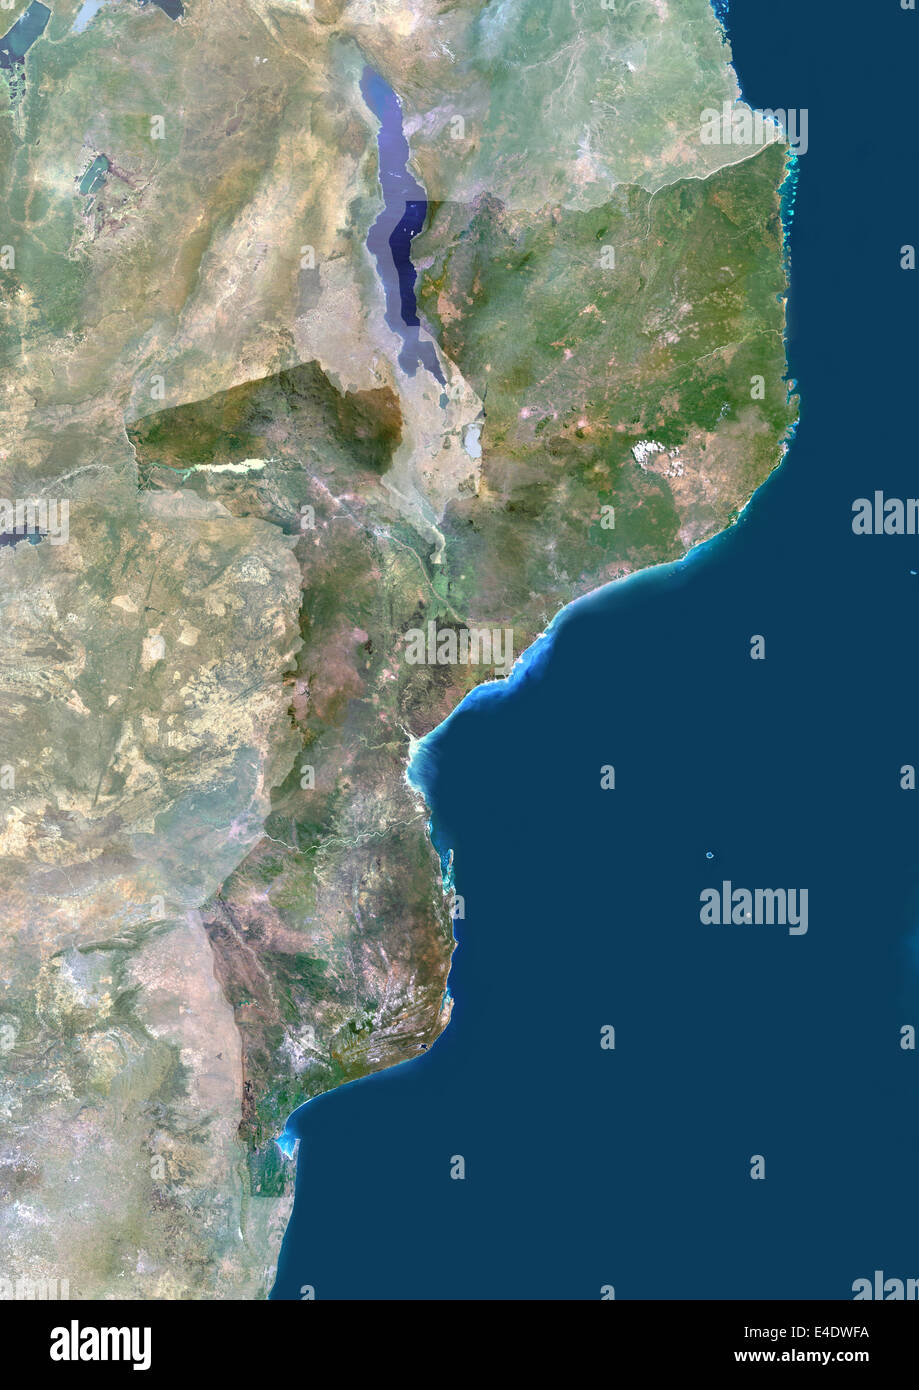 Mosambik, Afrika, Echtfarben-Satellitenbild mit Maske. Satellitenansicht von Mosambik (mit Maske). Dieses Bild wurde her zusammengestellt. Stockfoto